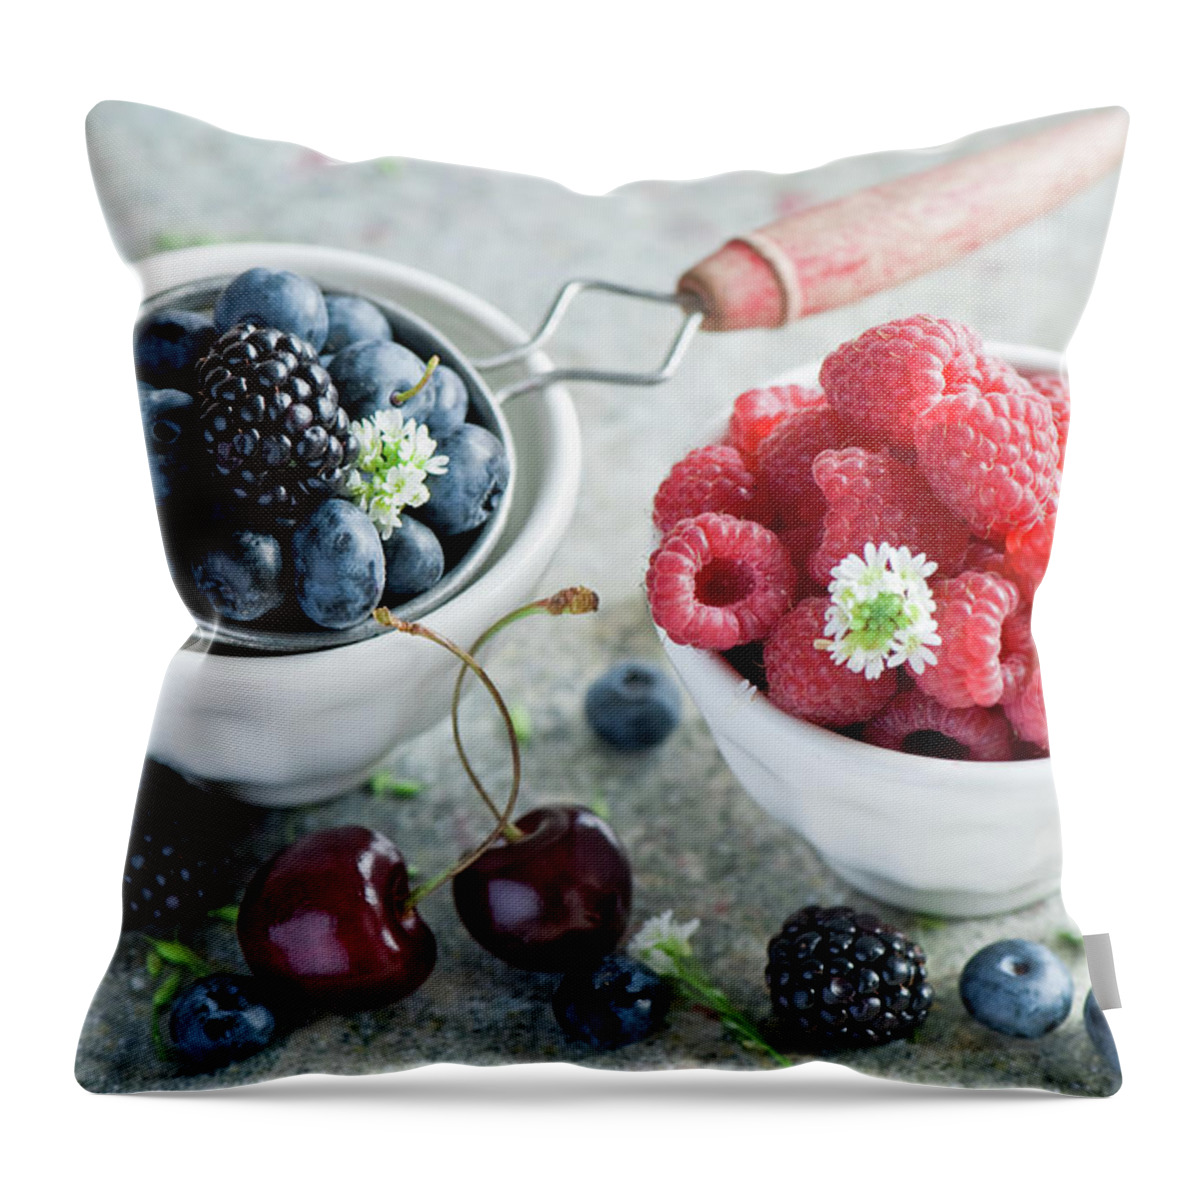 Breakfast Throw Pillow featuring the photograph Summer Berries #1 by Verdina Anna